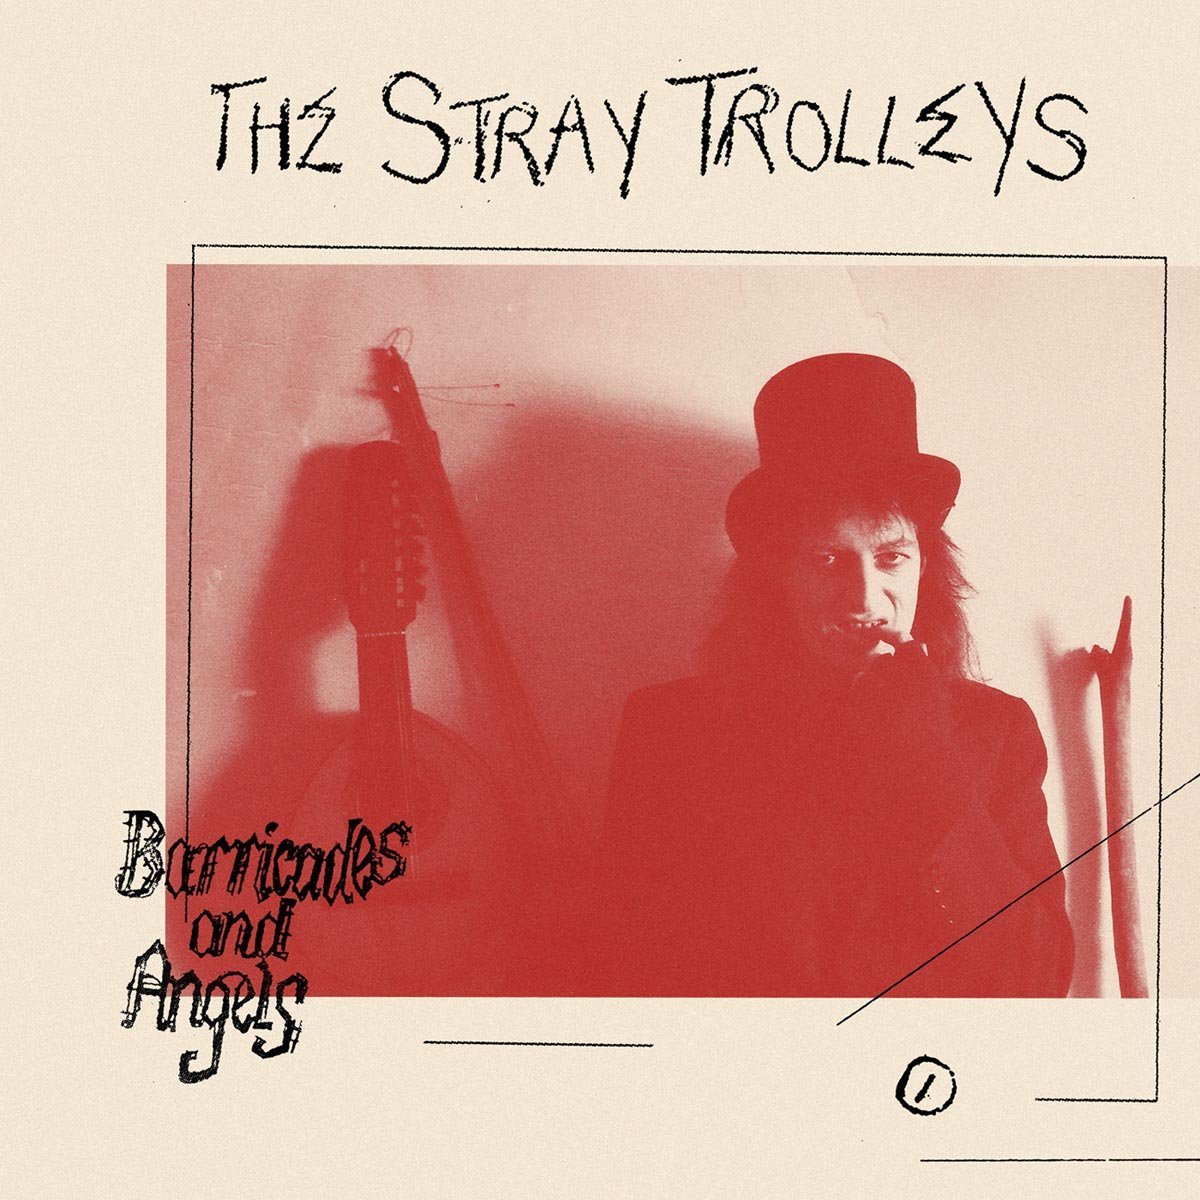 Captured Tracks переиздали единственный альбом британских глэм-рок аутсайдеров The Stray Trolleys «Barricades and Angels» 1